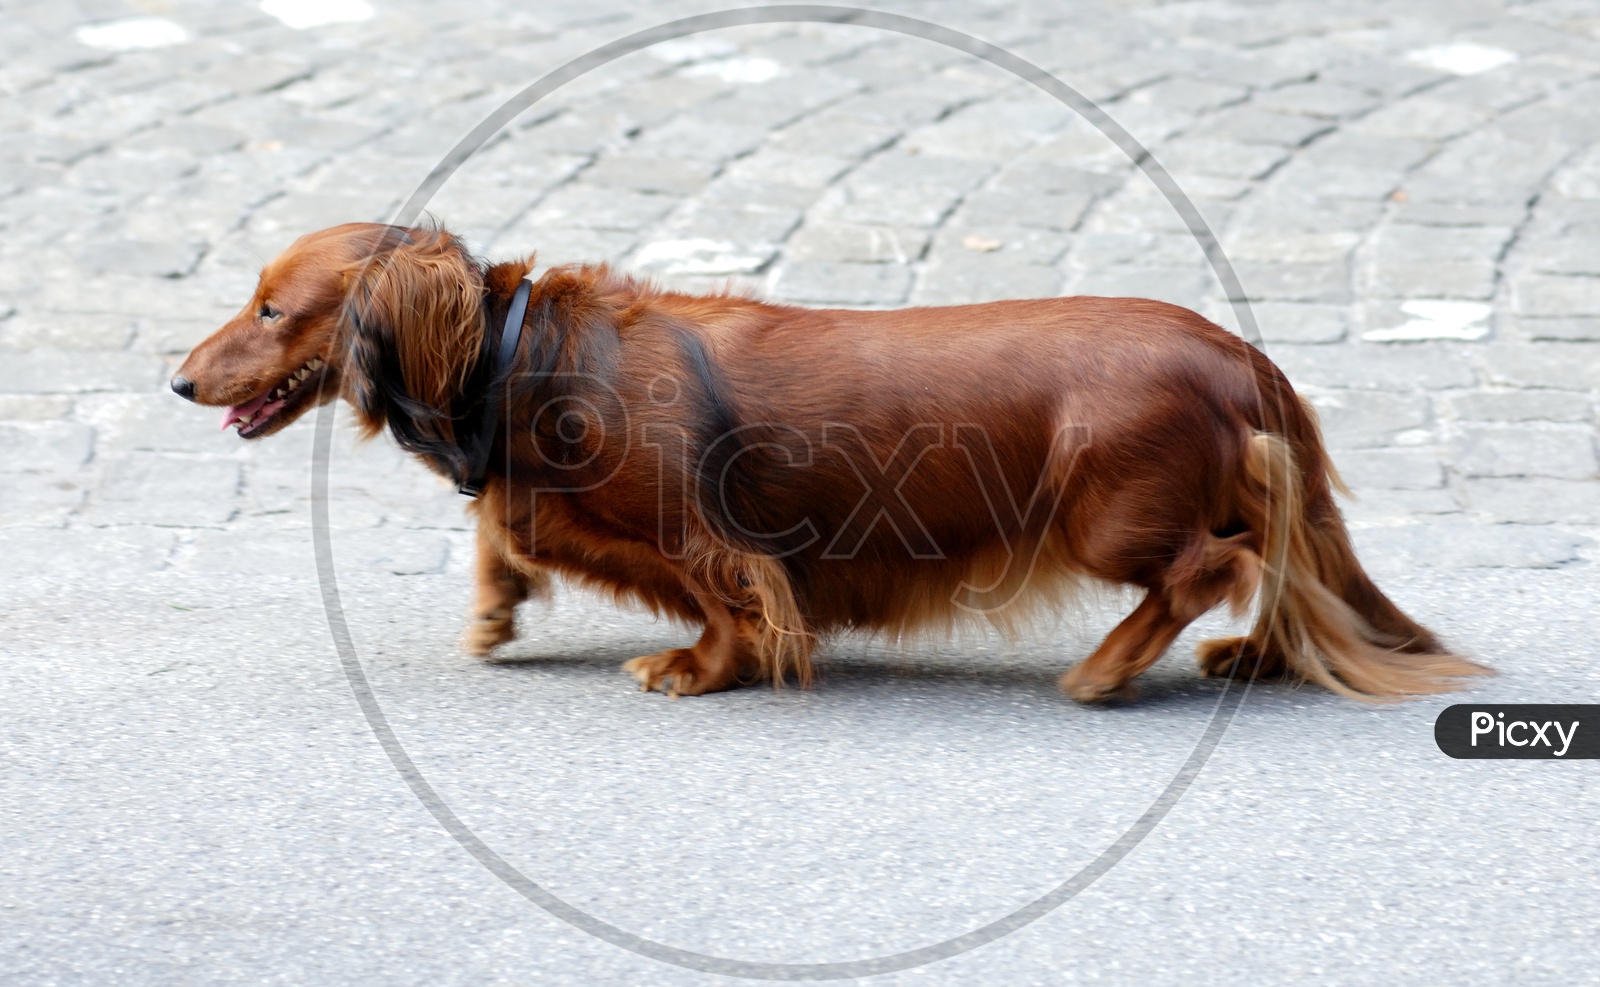 Dachshund Dog On a Street